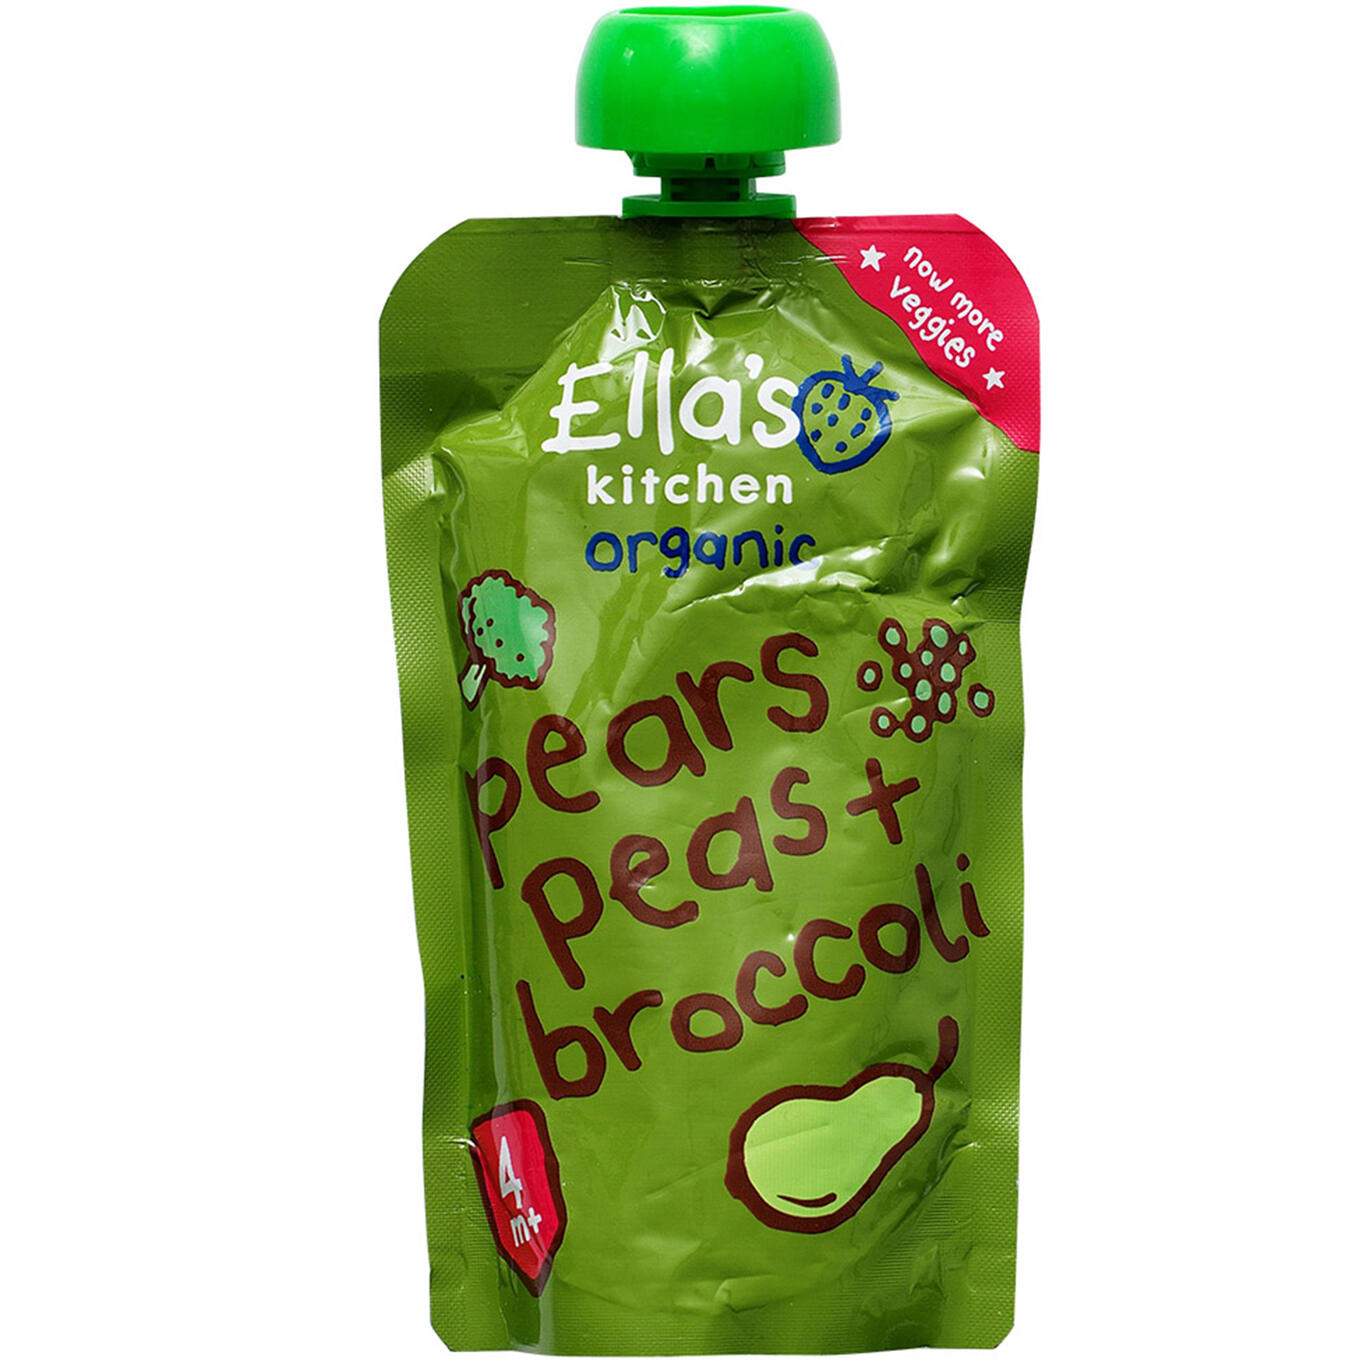 pears, peas + broccoli Ella's kitchen